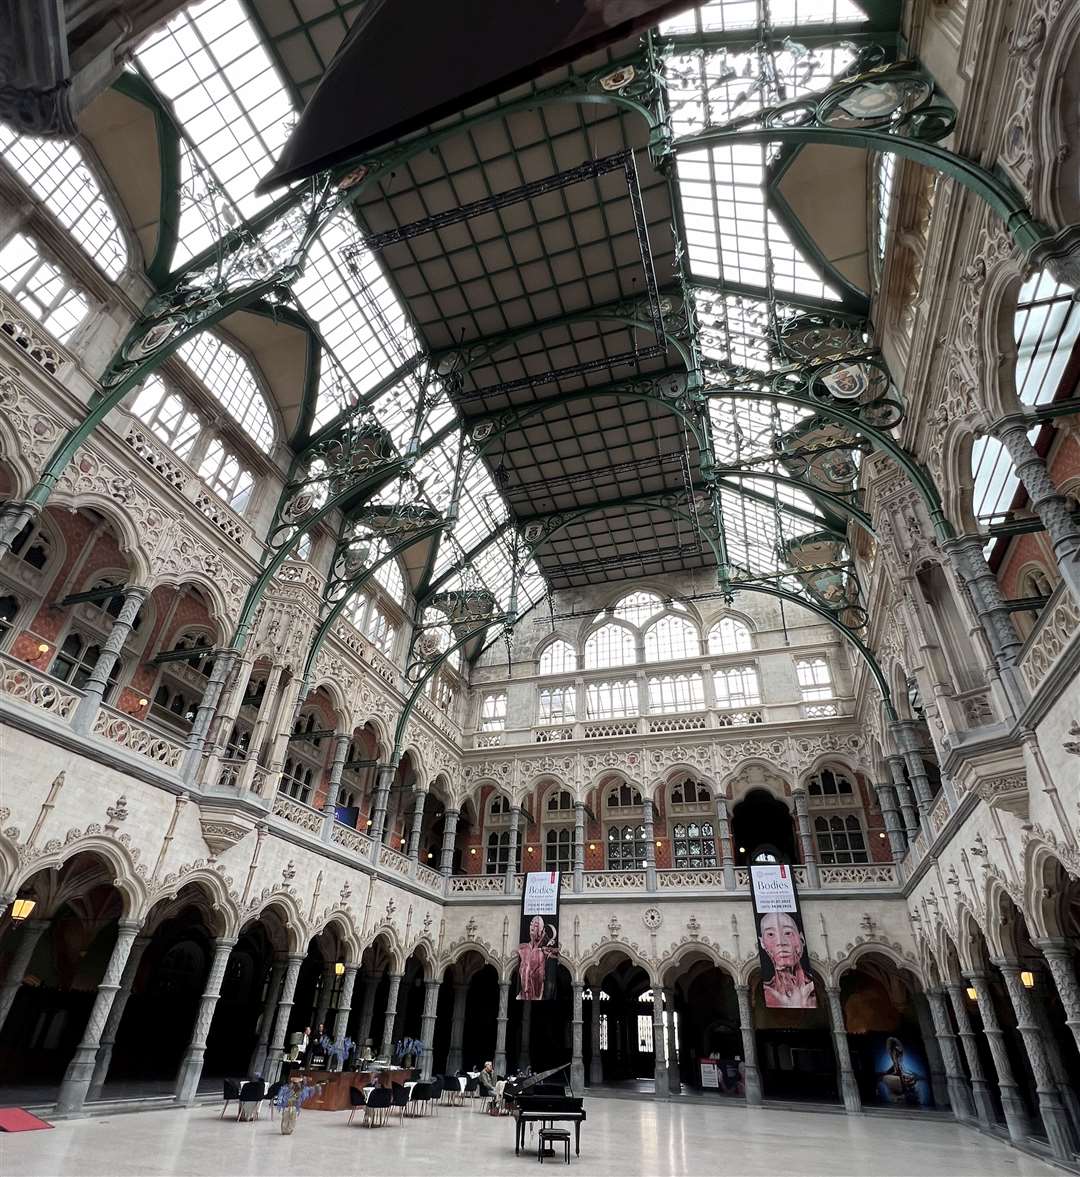 The Handelsbeurs (Stock Exchange) is one of Antwerp's architectural treasures